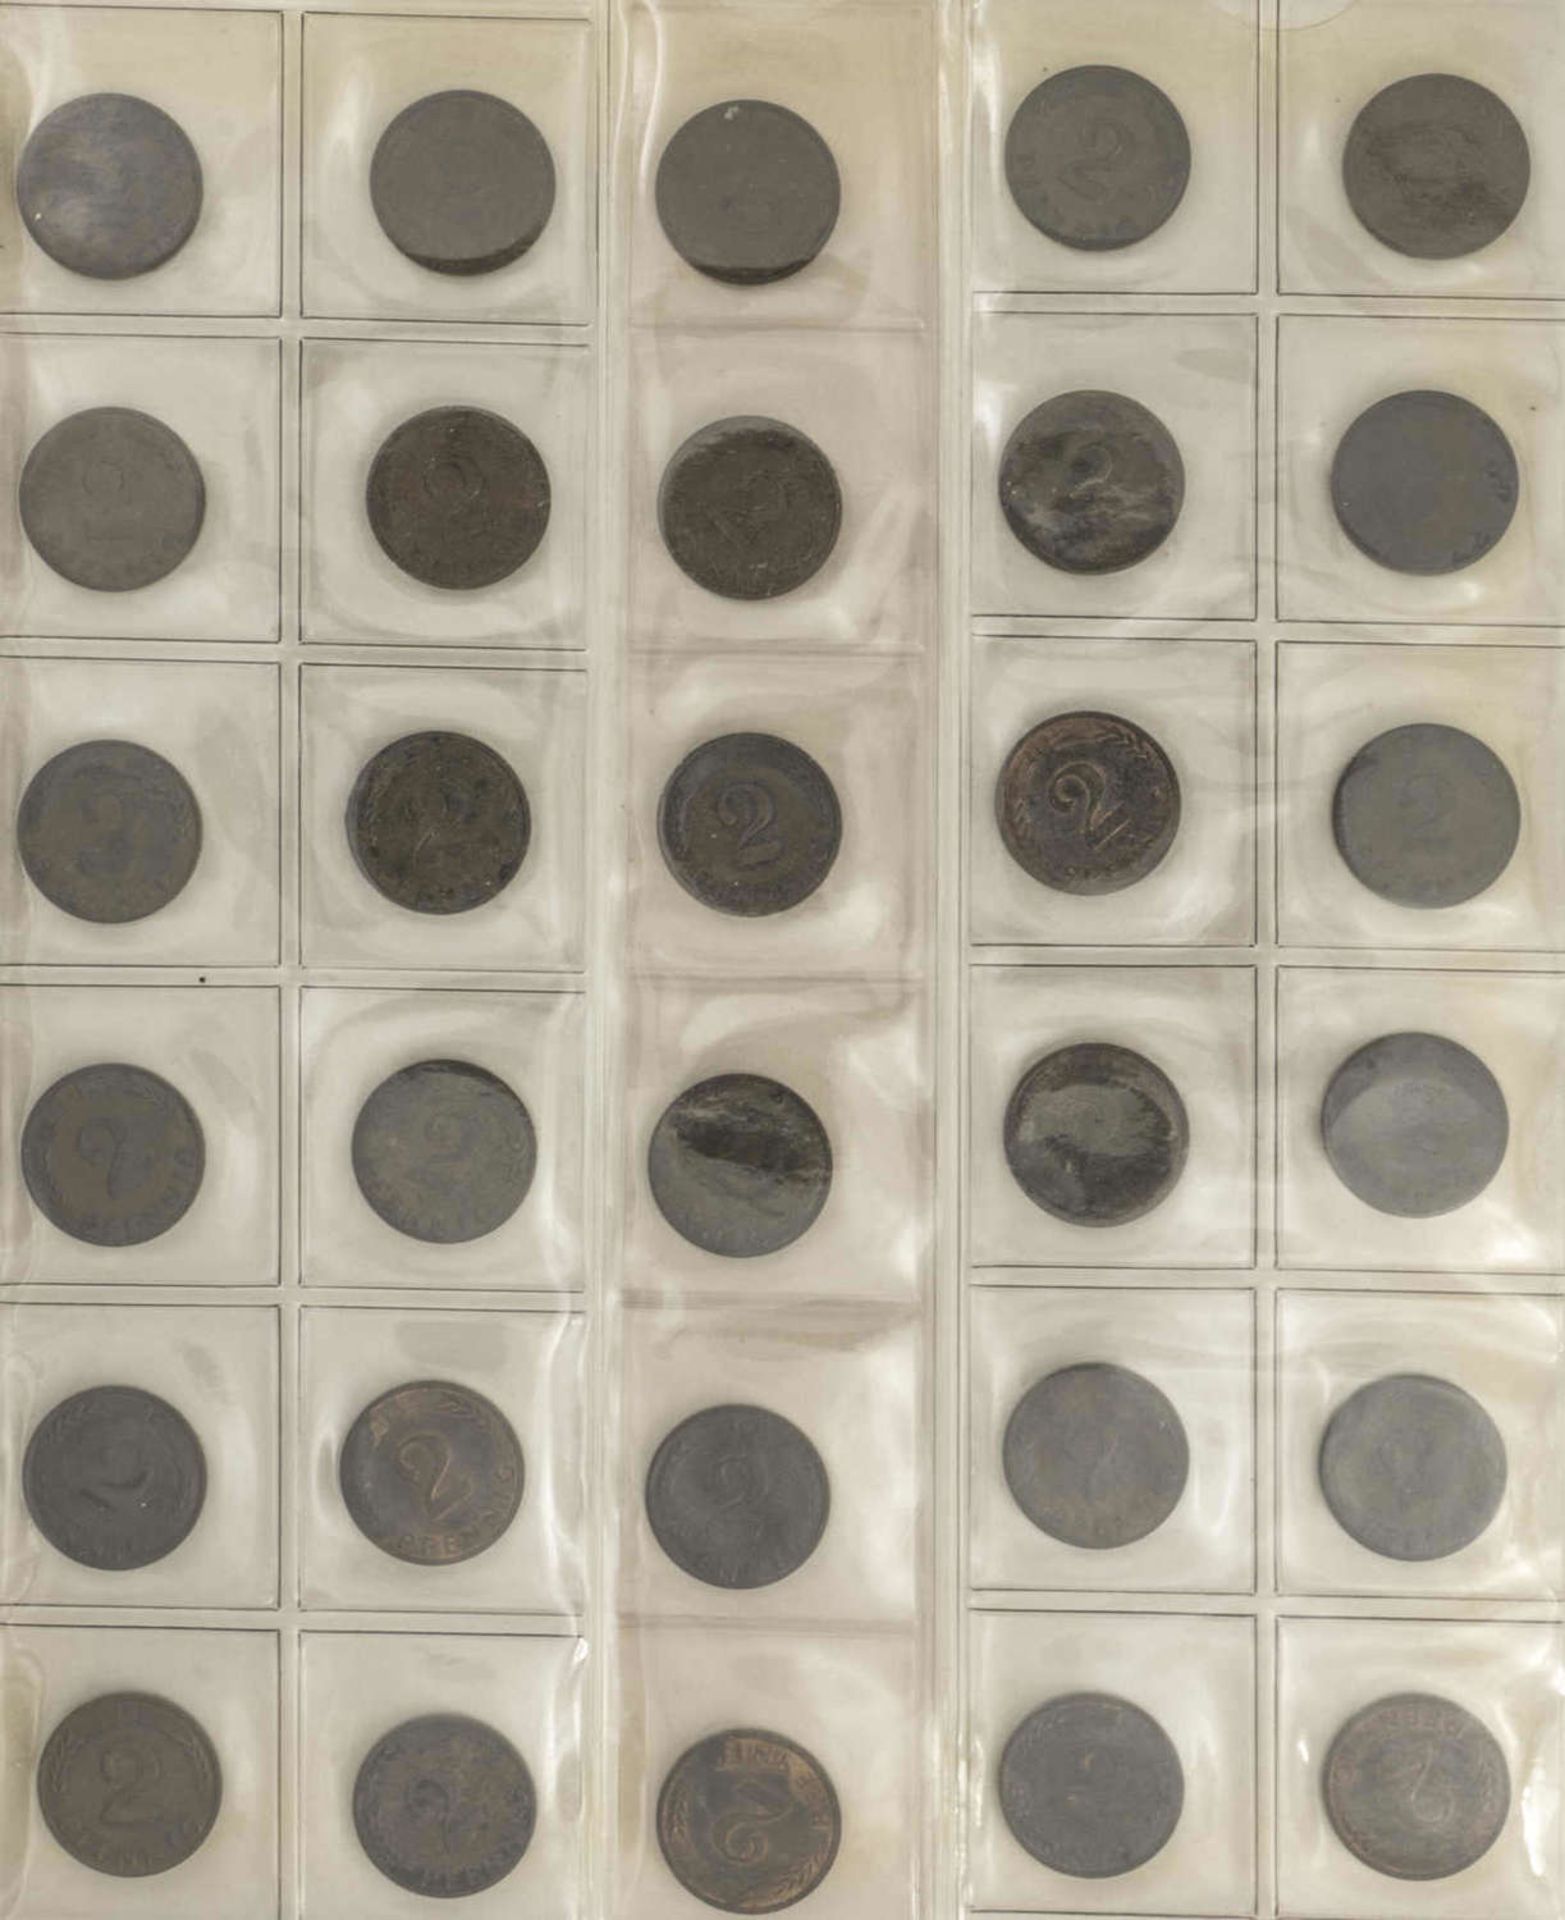 BRD Sammlung 1 Pfennig und 2 Pfennig - Münzen. Dabei: 1 Pfennig: 1948 - 50 DFGJ, 1966 - 85 DFGJ, 1